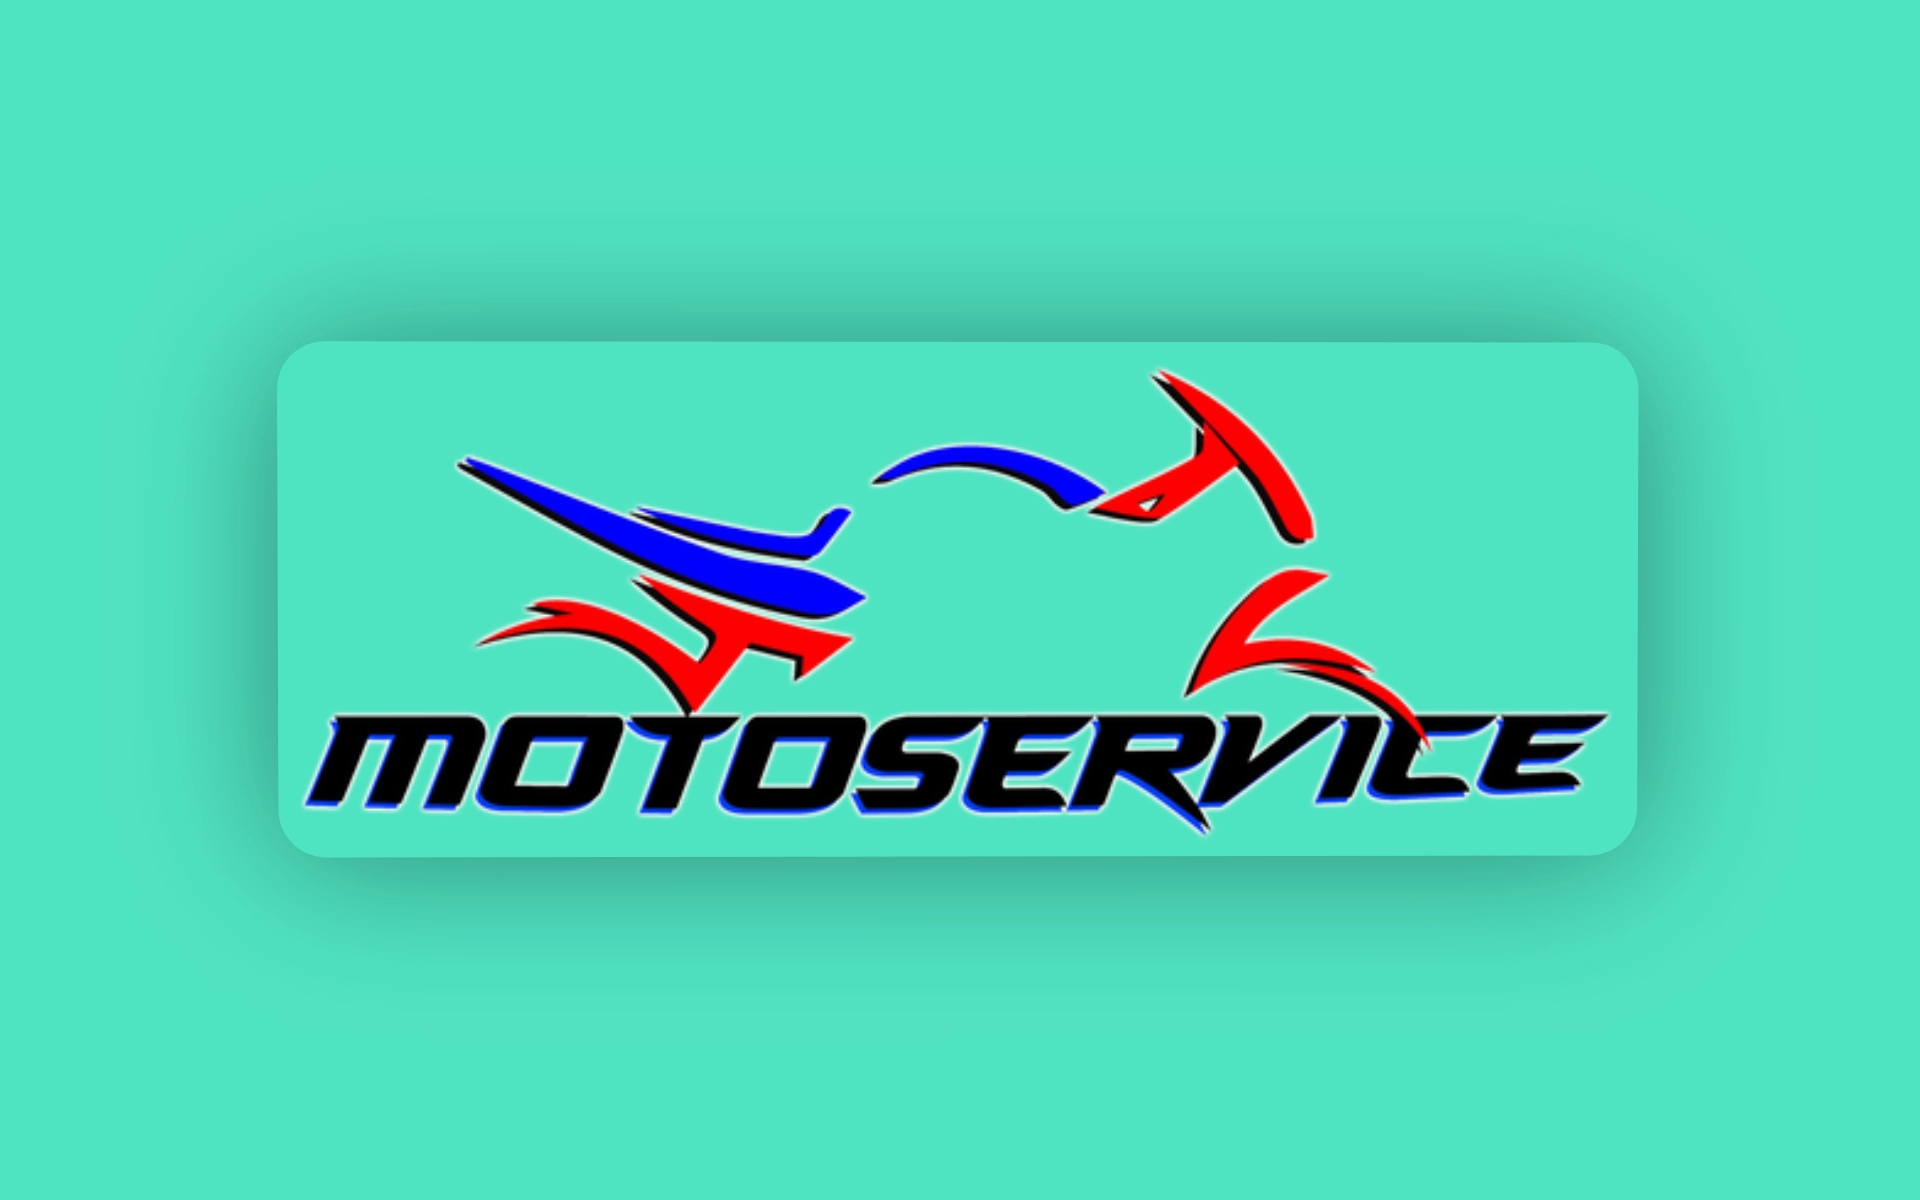 Logo de Motorservice.